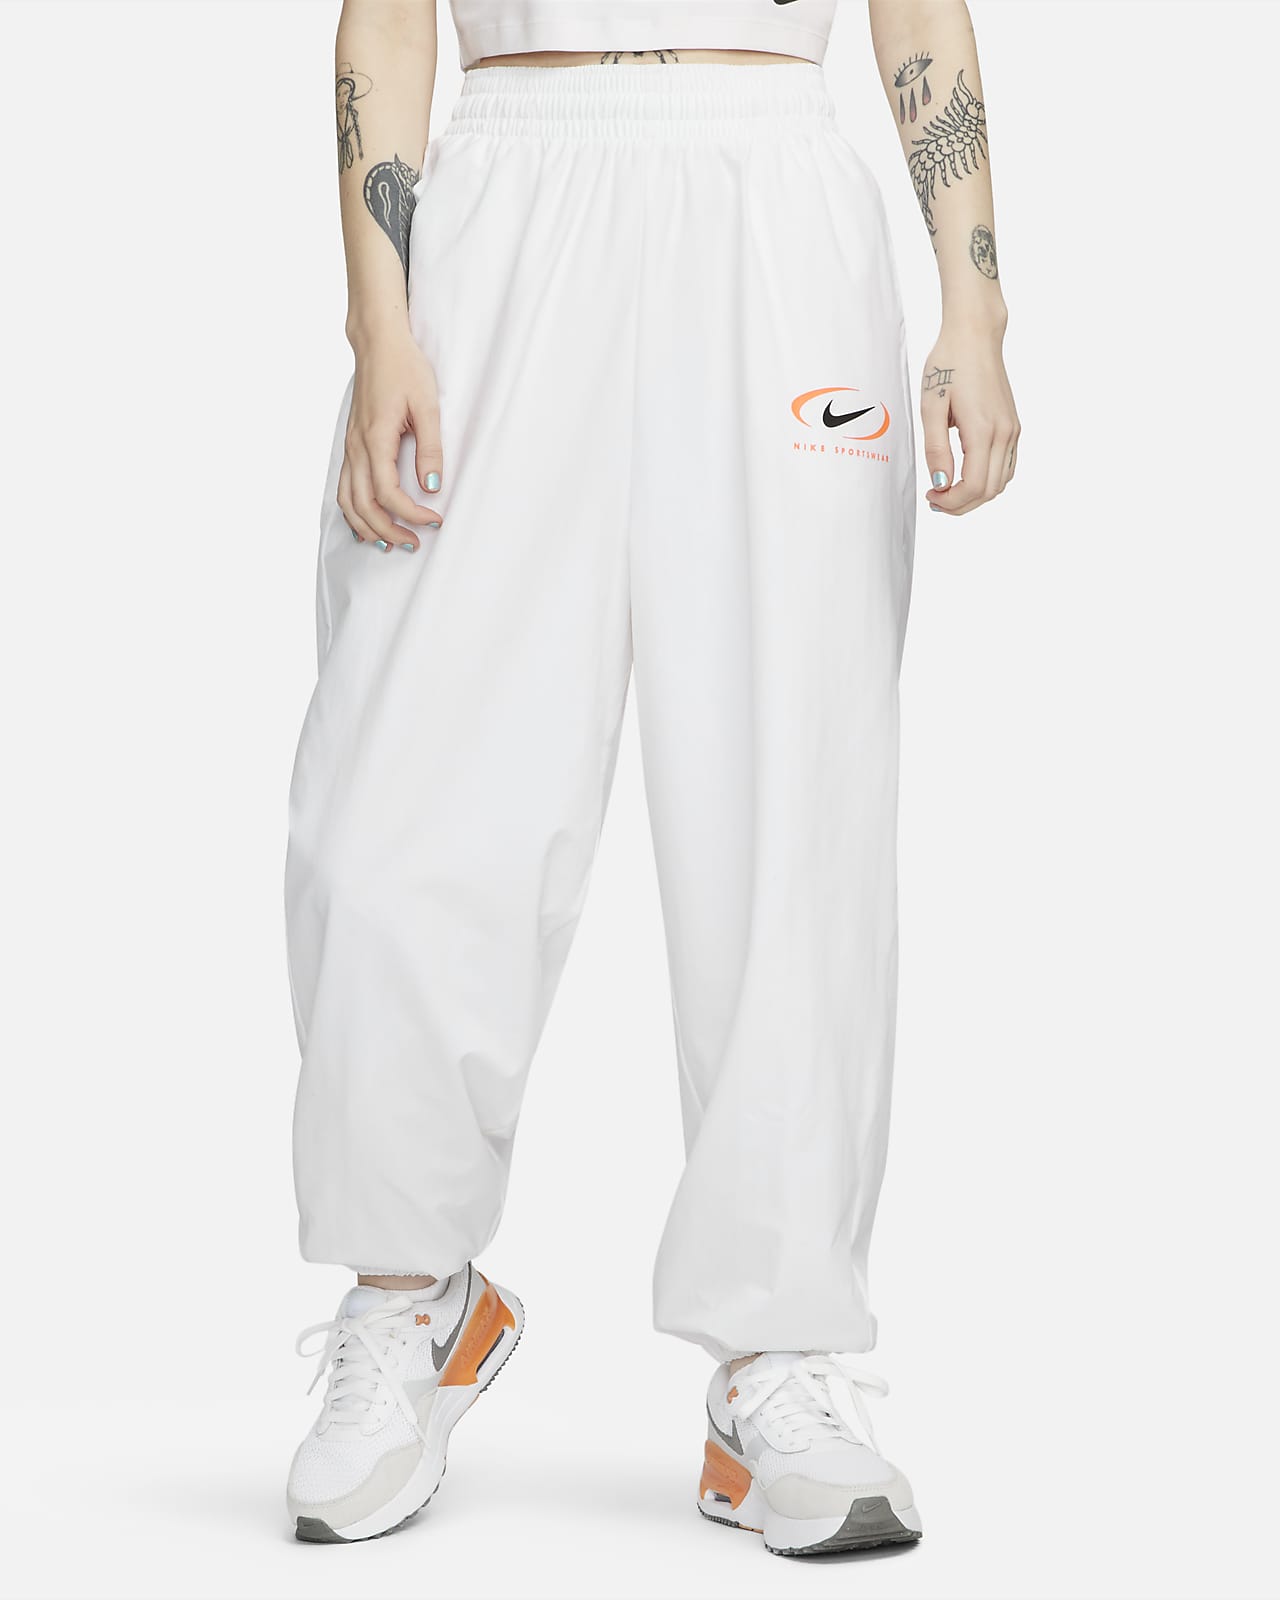 Pantalon de jogging tissé Nike Sportswear pour femme. Nike LU